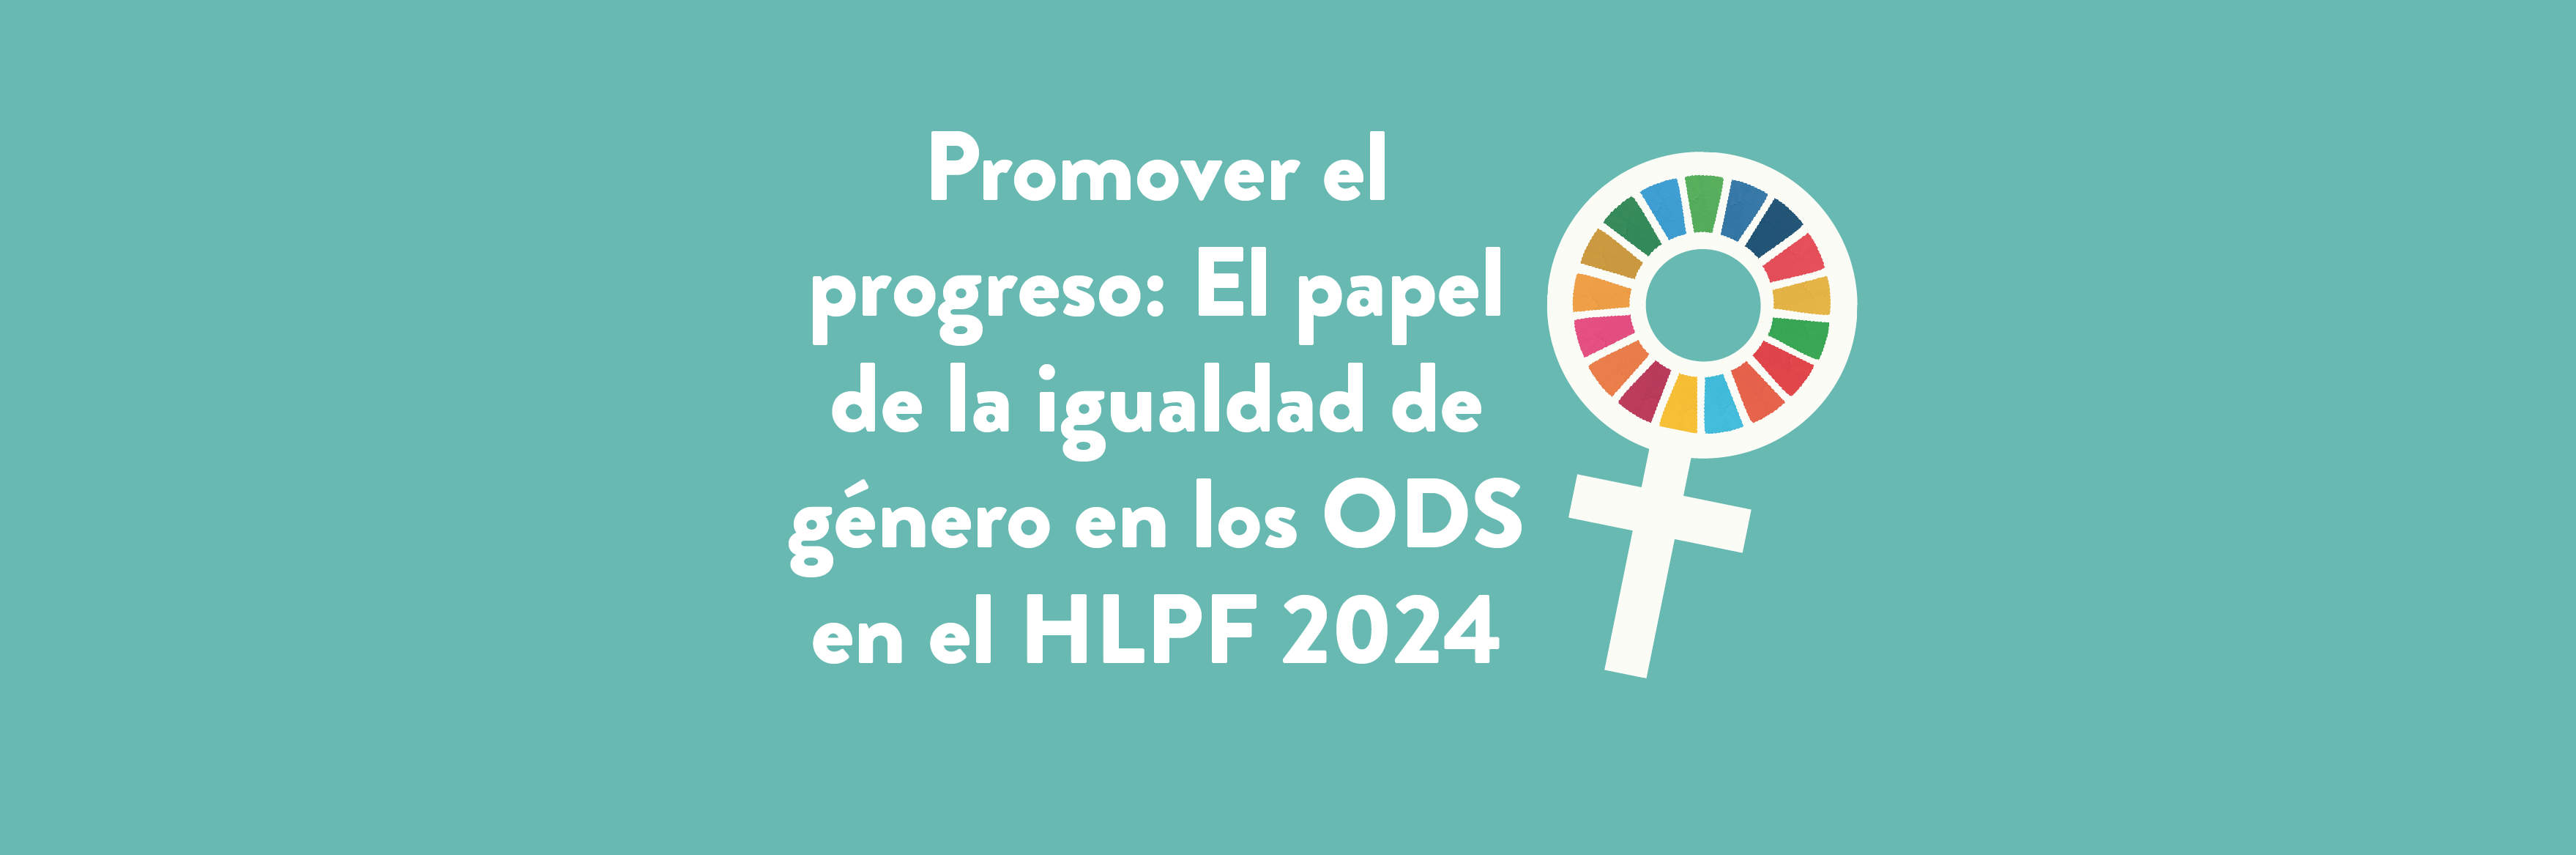 Promover el progreso: El papel de la igualdad de género en los ODS en el HLPF 2024